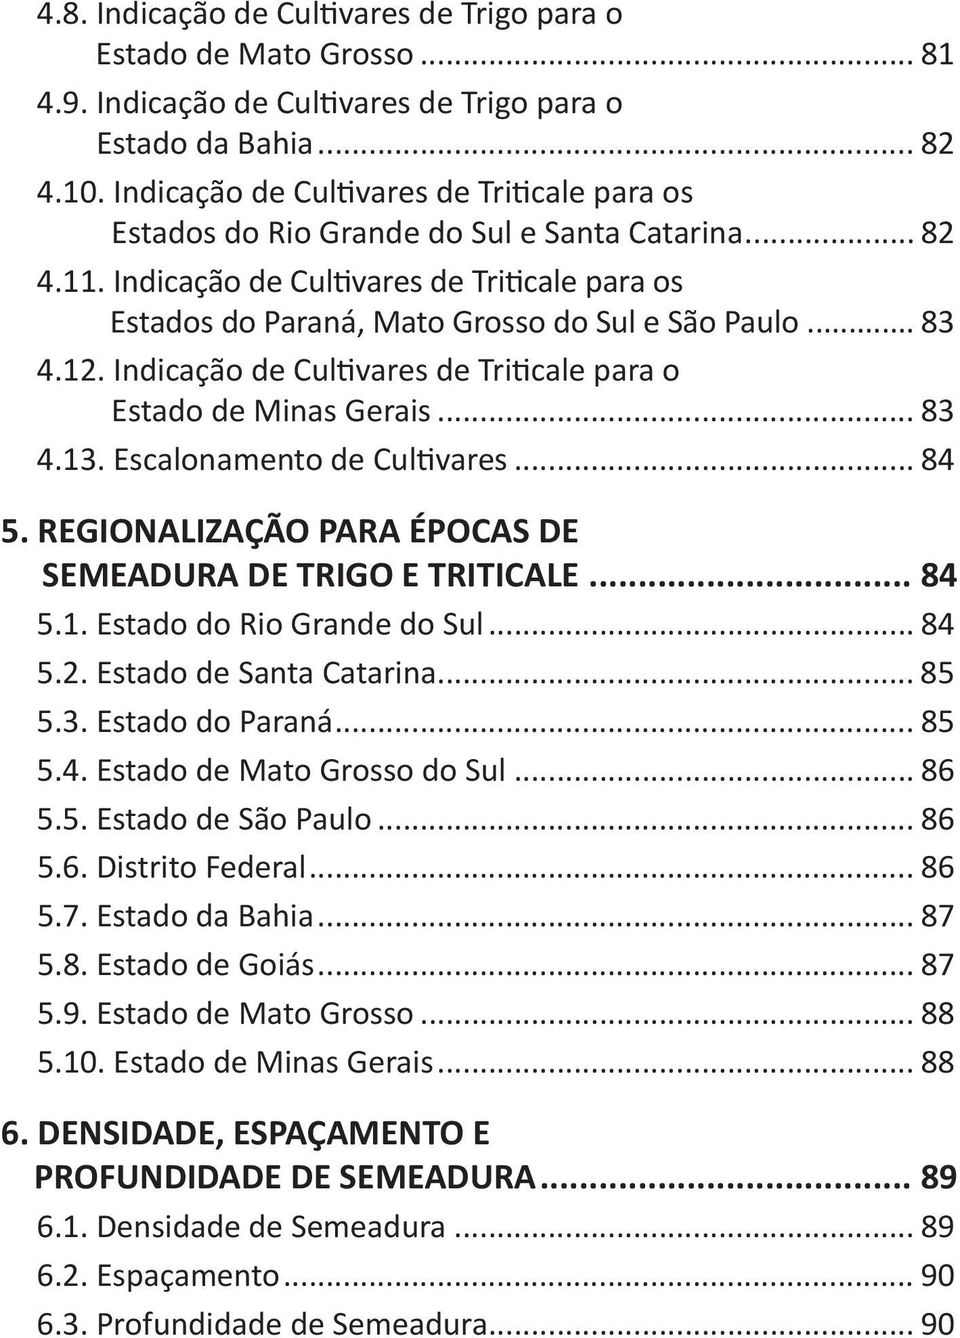 .. 83 4.12. Indicação de Cultivares de Triticale para o Estado de Minas Gerais... 83 4.13. Escalonamento de Cultivares... 84 5. REGIONALIZAÇÃO PARA ÉPOCAS DE SEMEADURA DE TRIGO E TRITICALE... 84 5.1. Estado do Rio Grande do Sul.